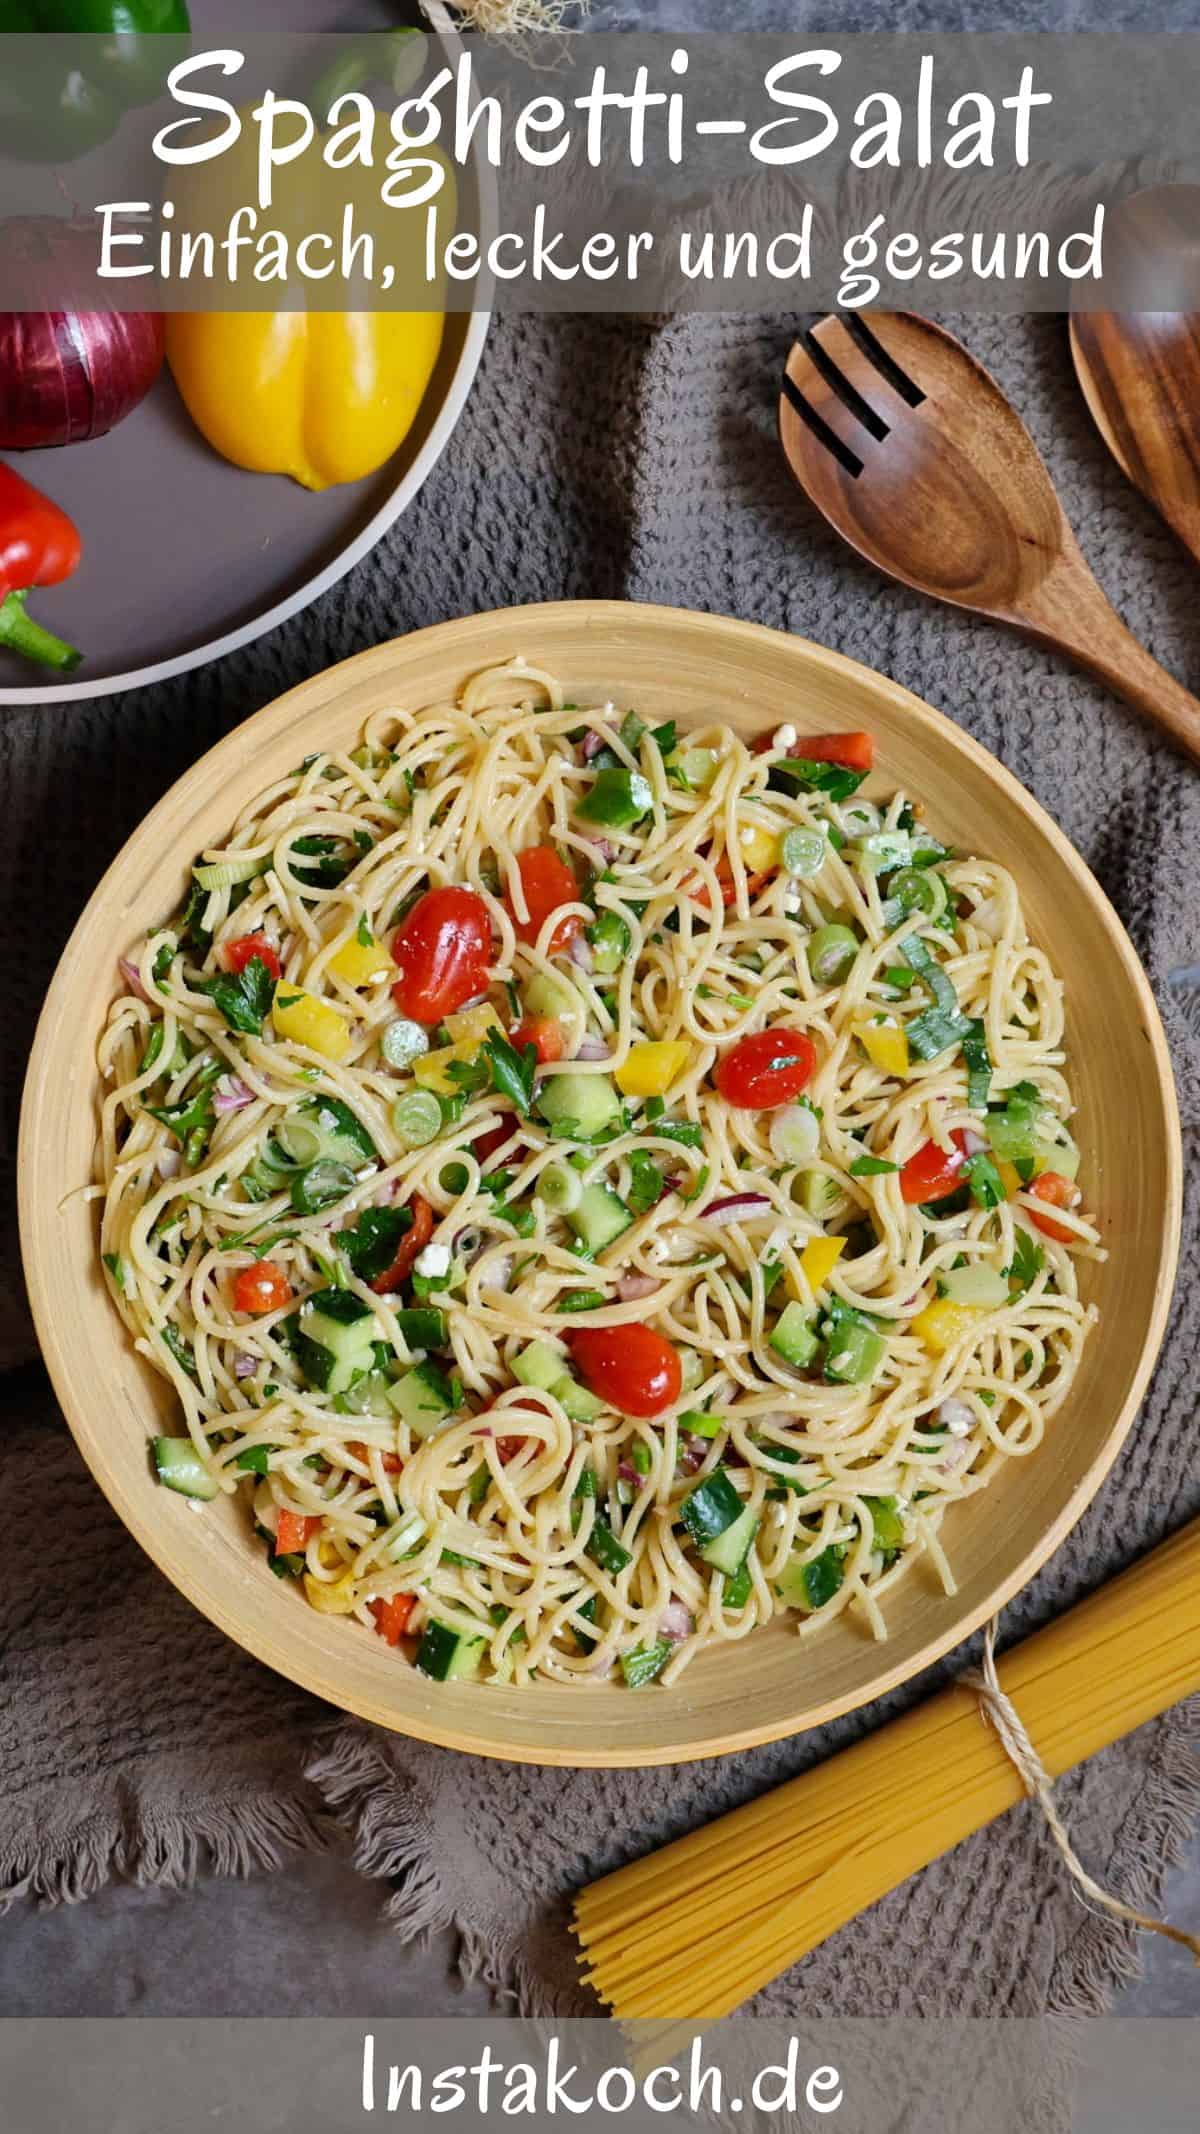 Eine Schüssel mit Spaghetti-Salat. Darüber ein Teller mit Gemüse und ein Salatbesteck.